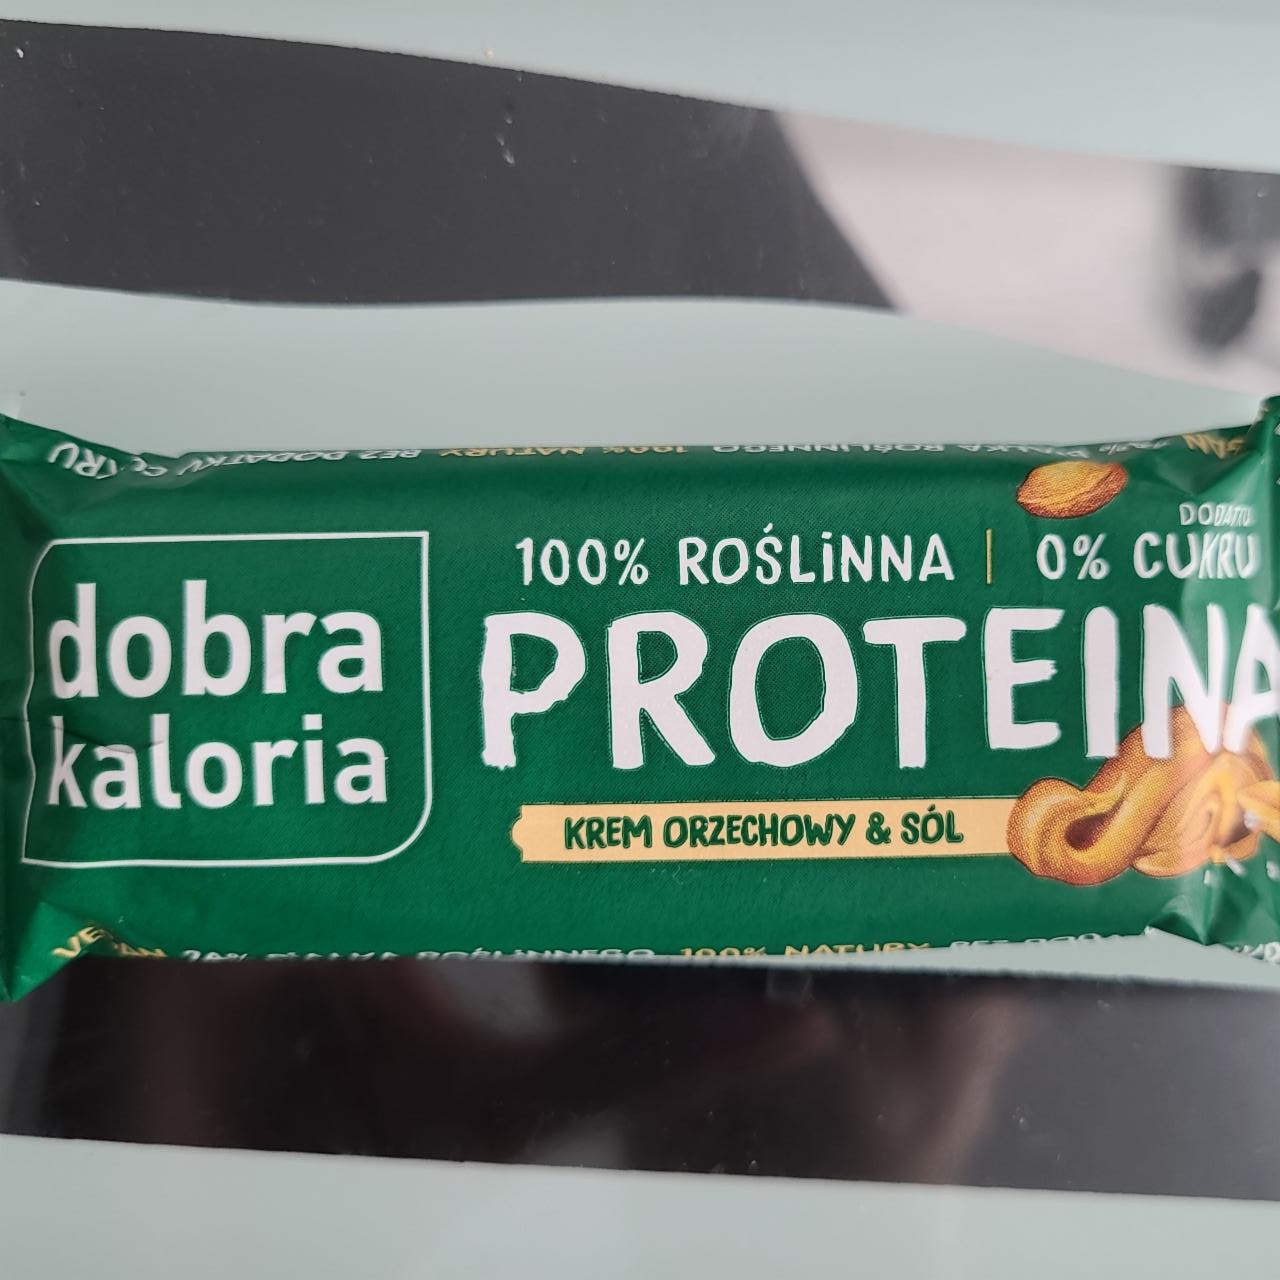 Фото - Протеиновый батончик с арахисовой пастой Protein Dobra Kaloria